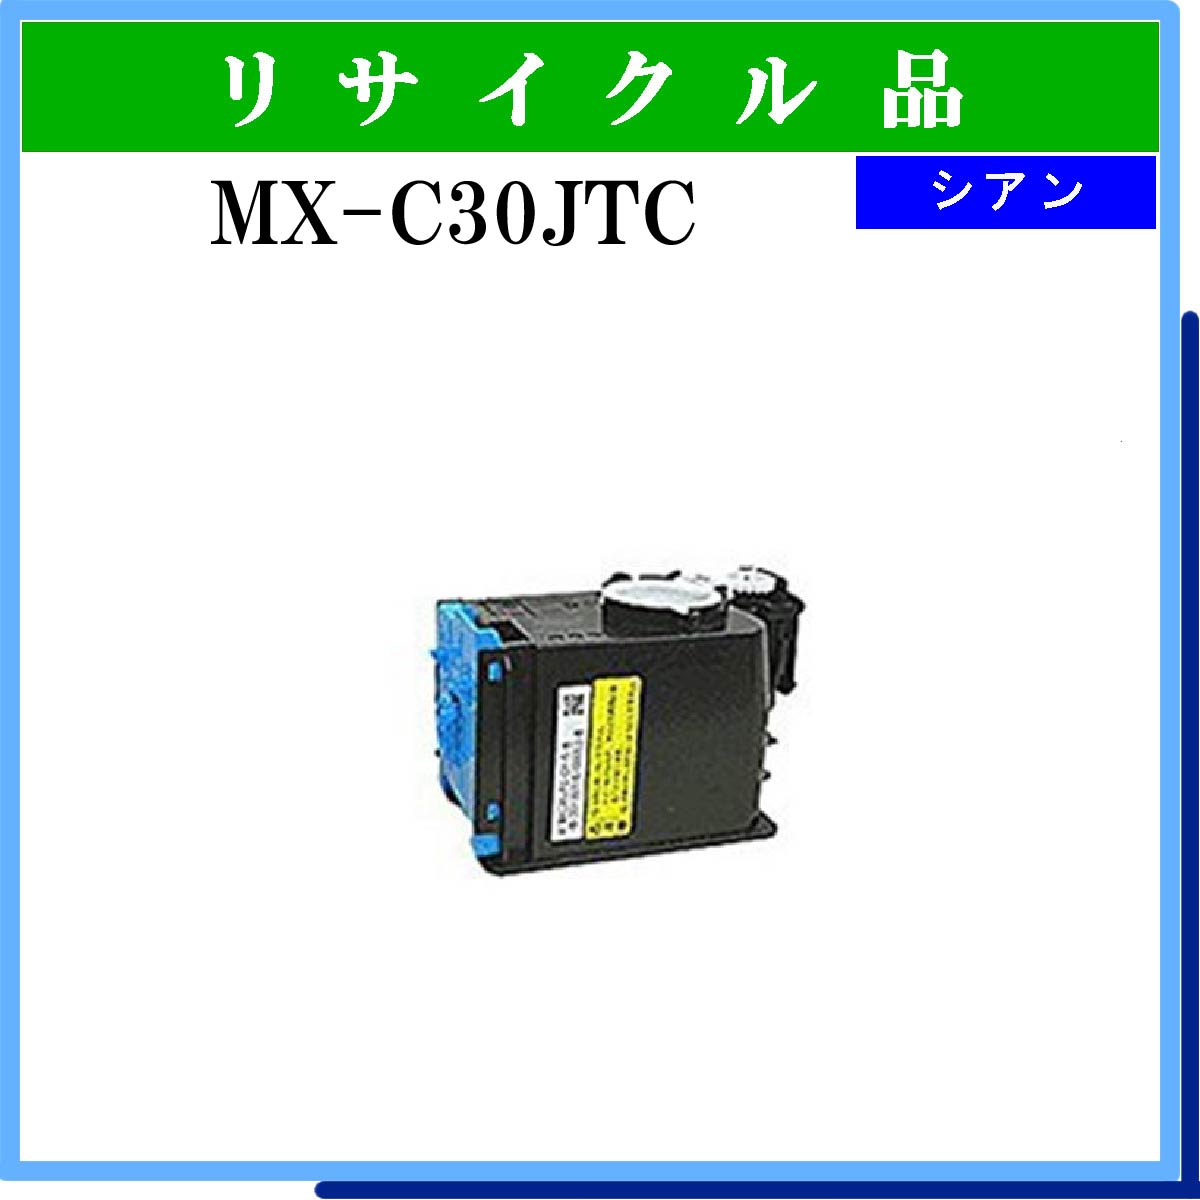 MX-C30JTC